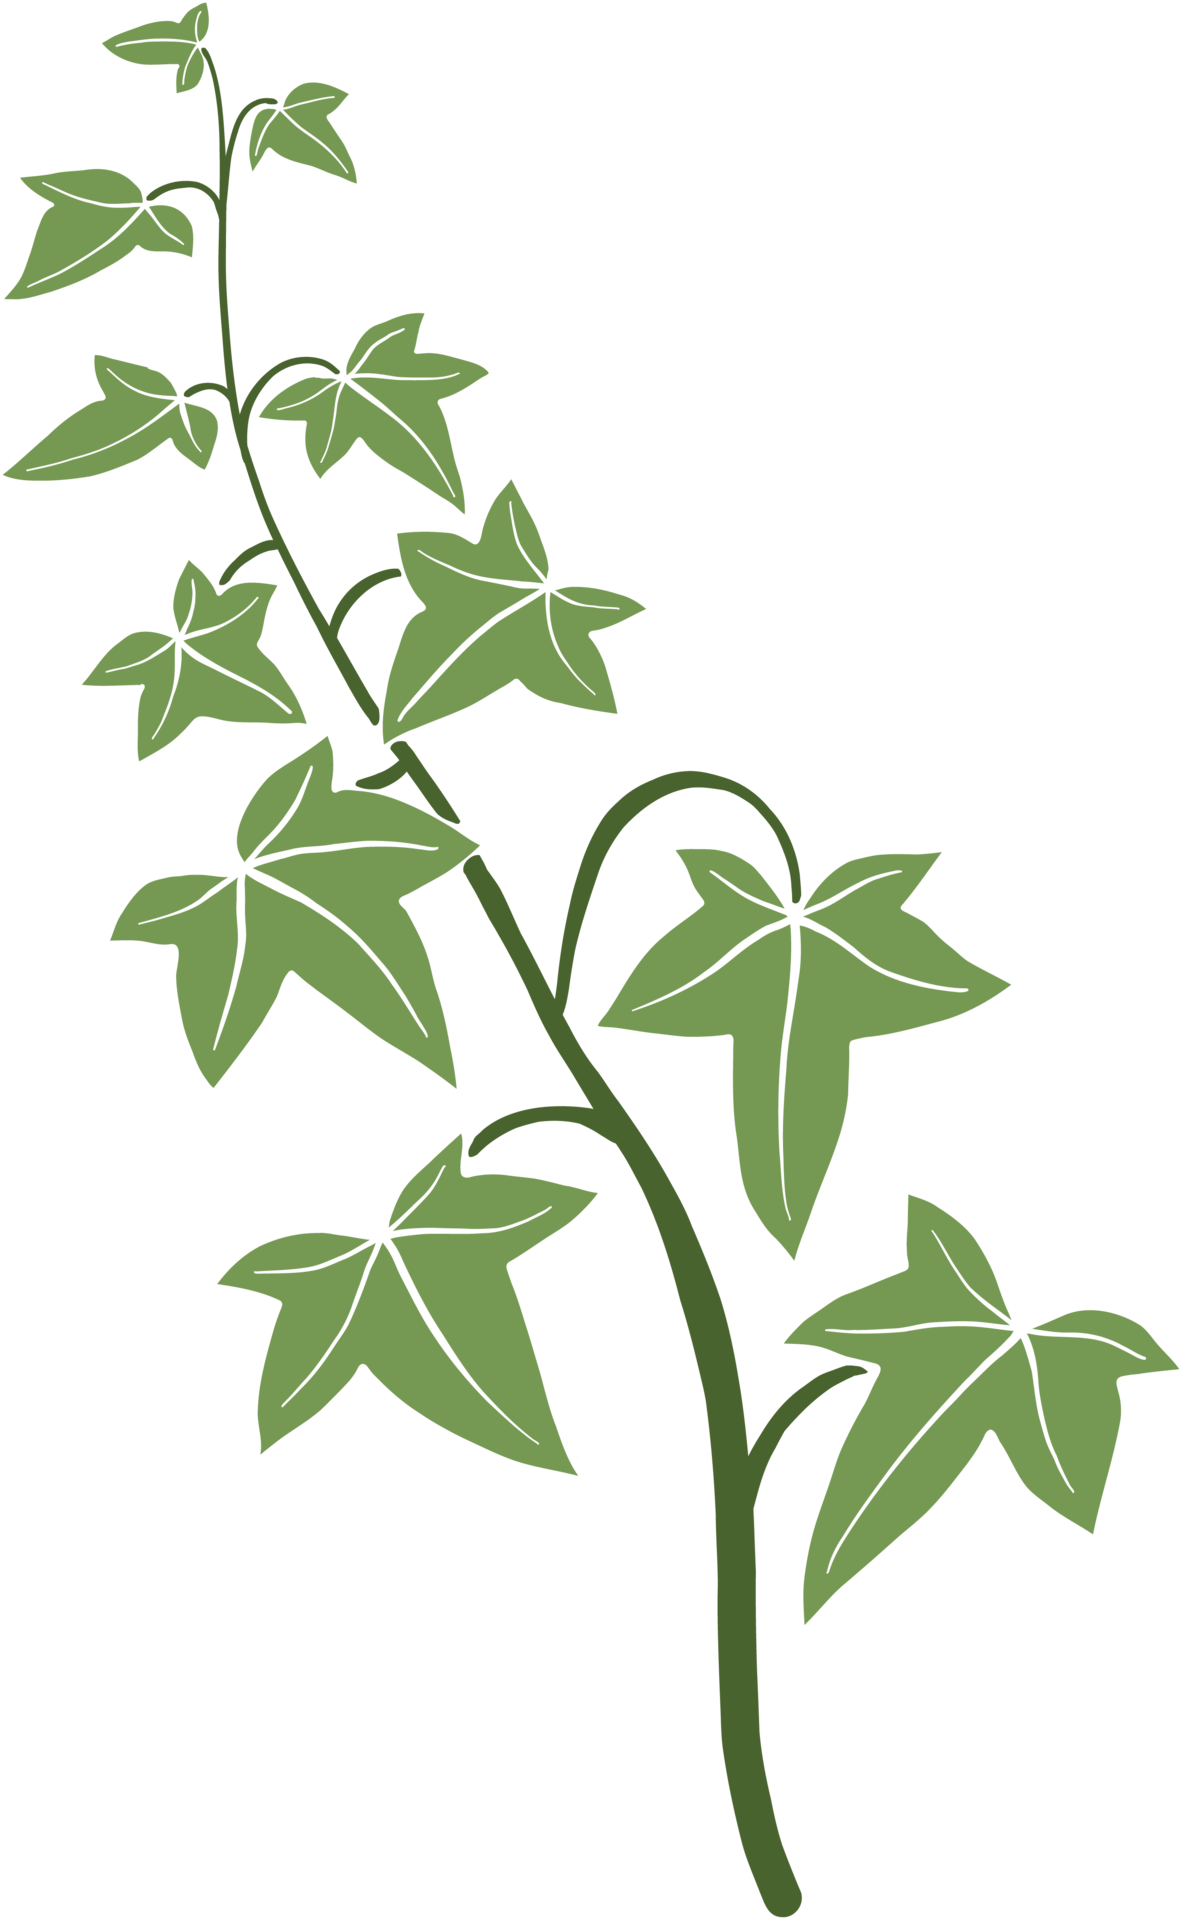 ivy-vine-illustration-24382972-png